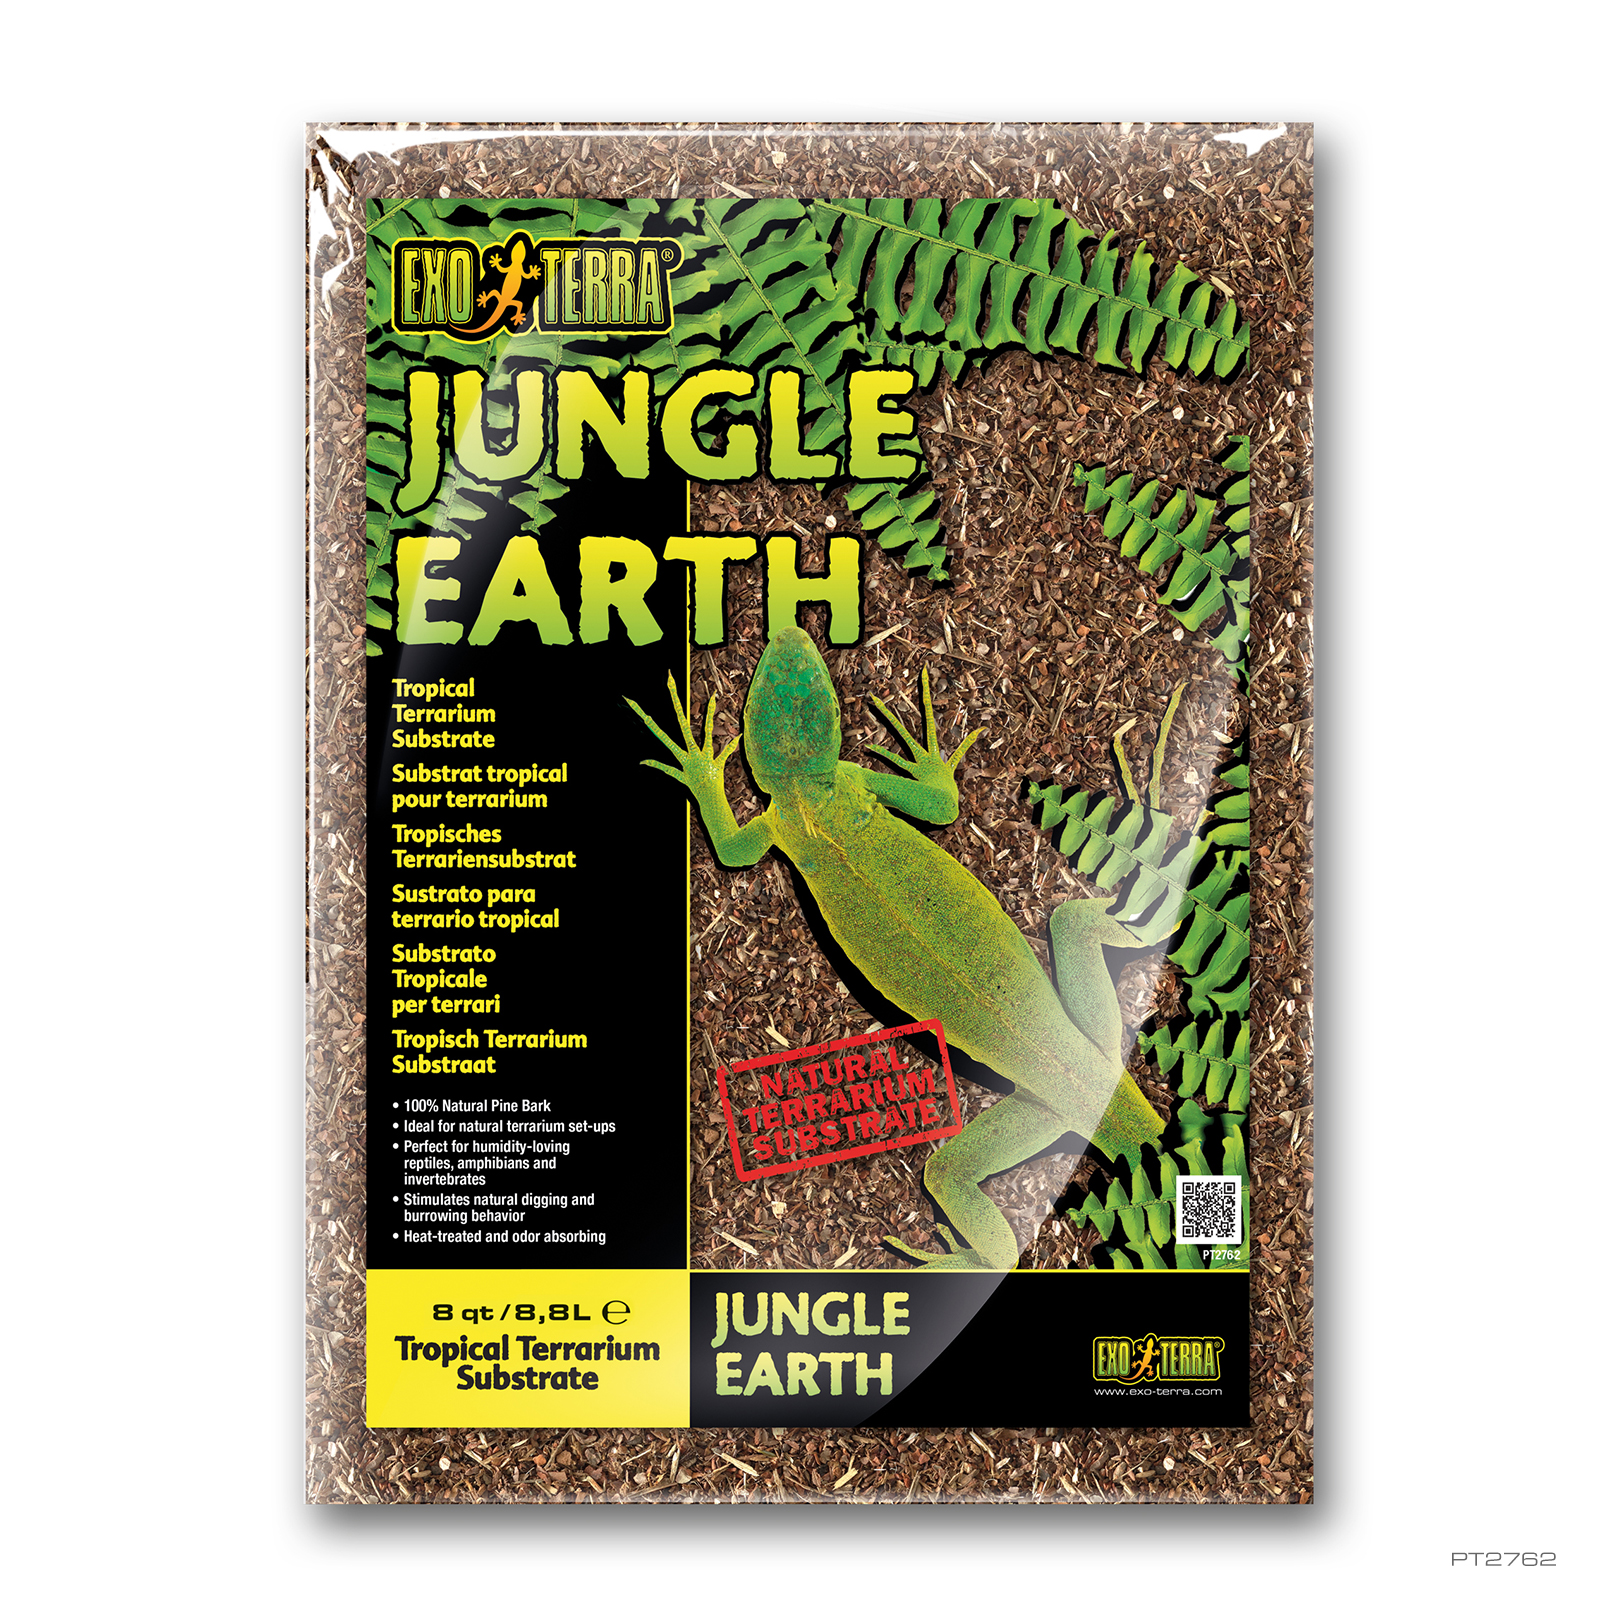 Jungle Earth 8QT - 8,8L